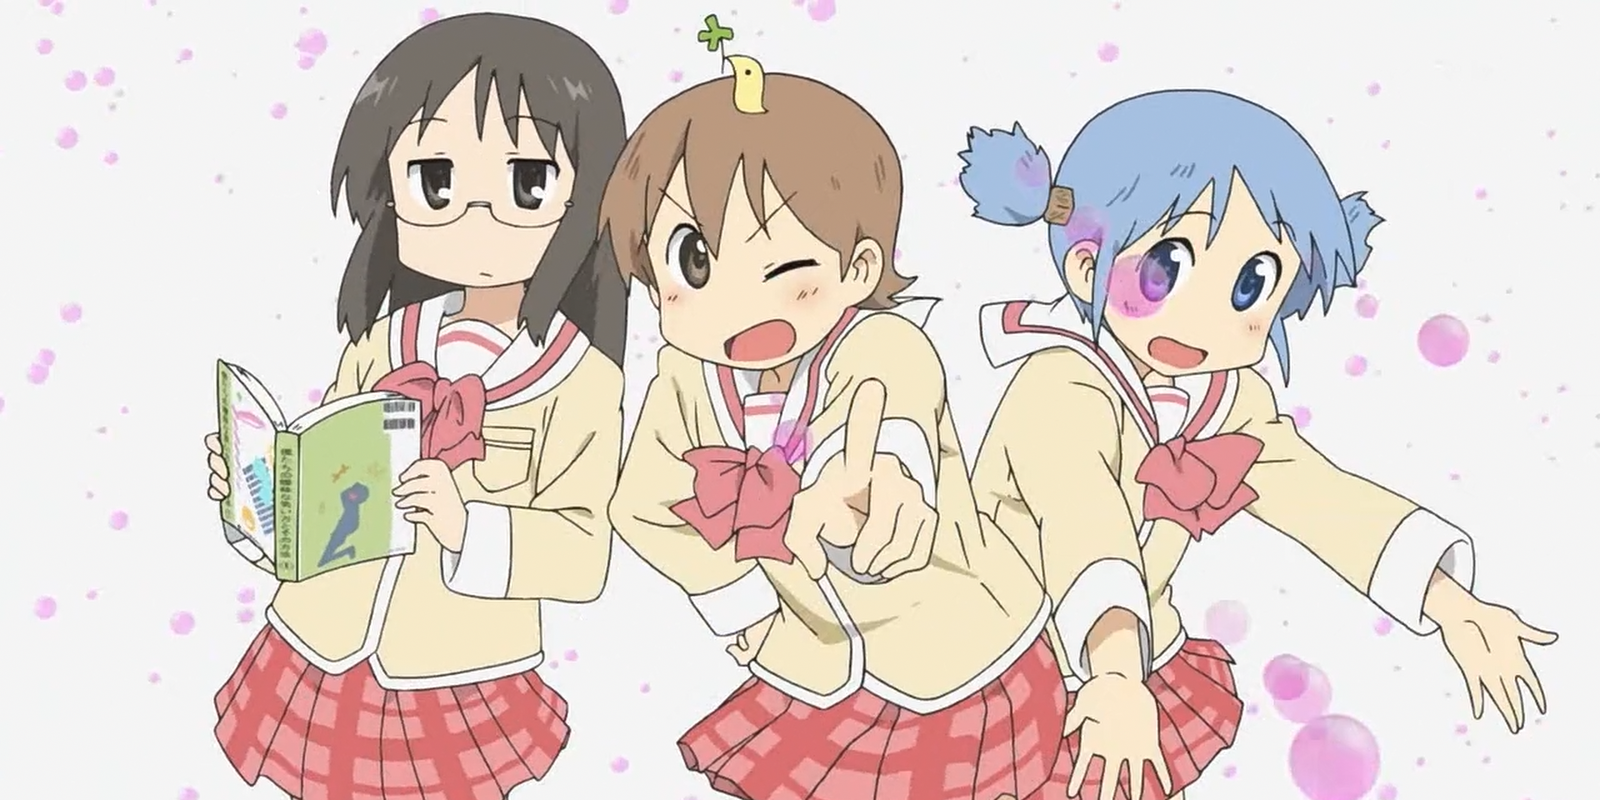 Nichijou trio with bubbles.